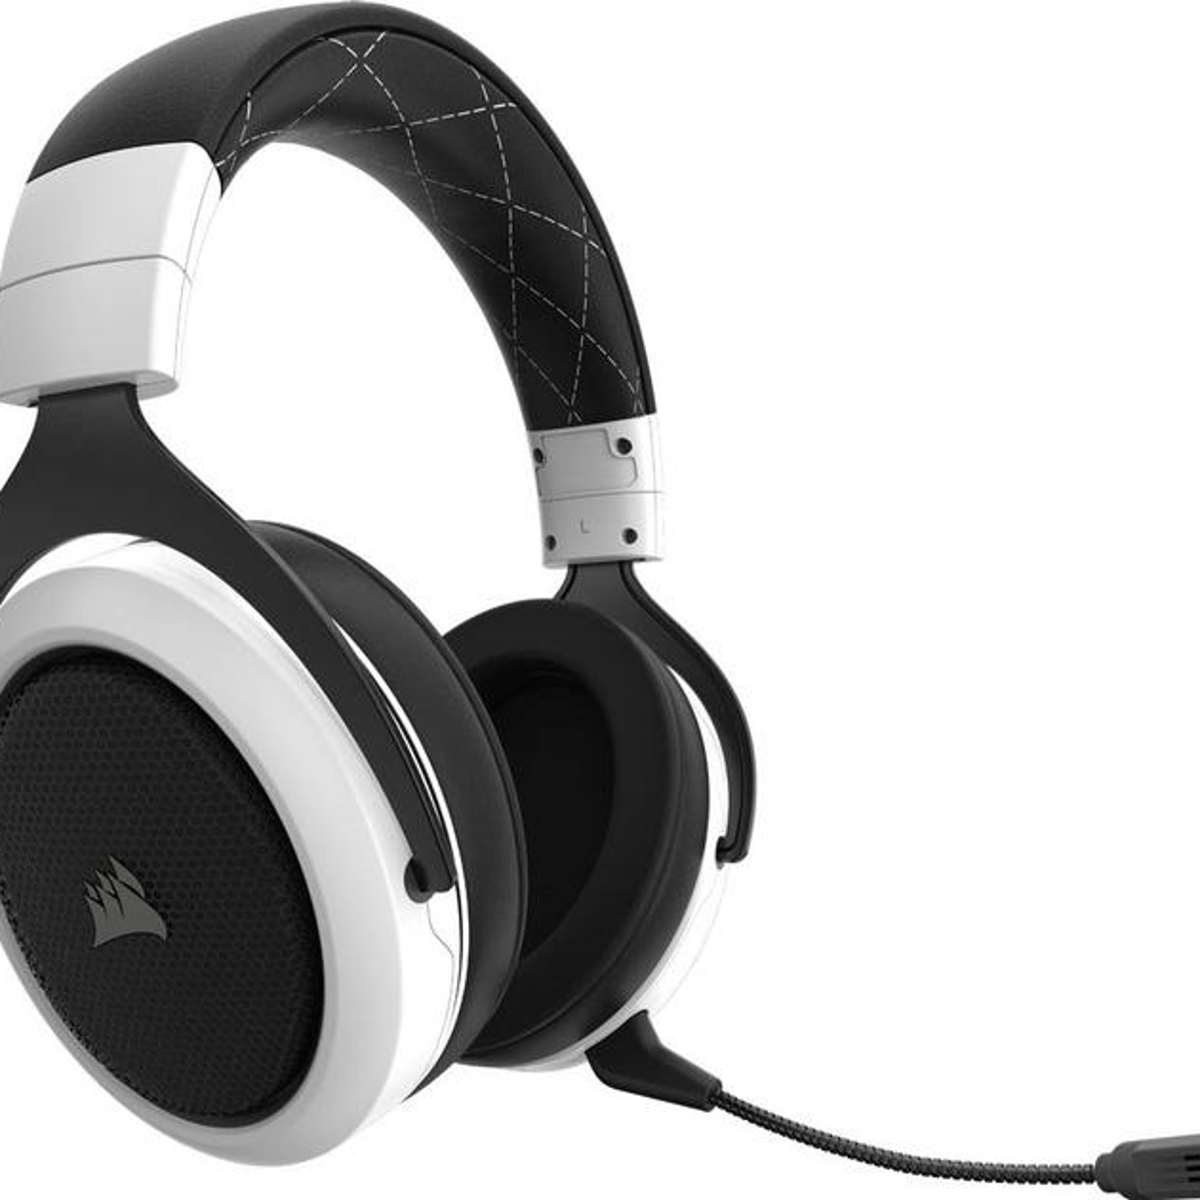 nogmaals Sterkte Margaret Mitchell Corsair's HS70 Pro wireless headset is down to just £75 | Eurogamer.net